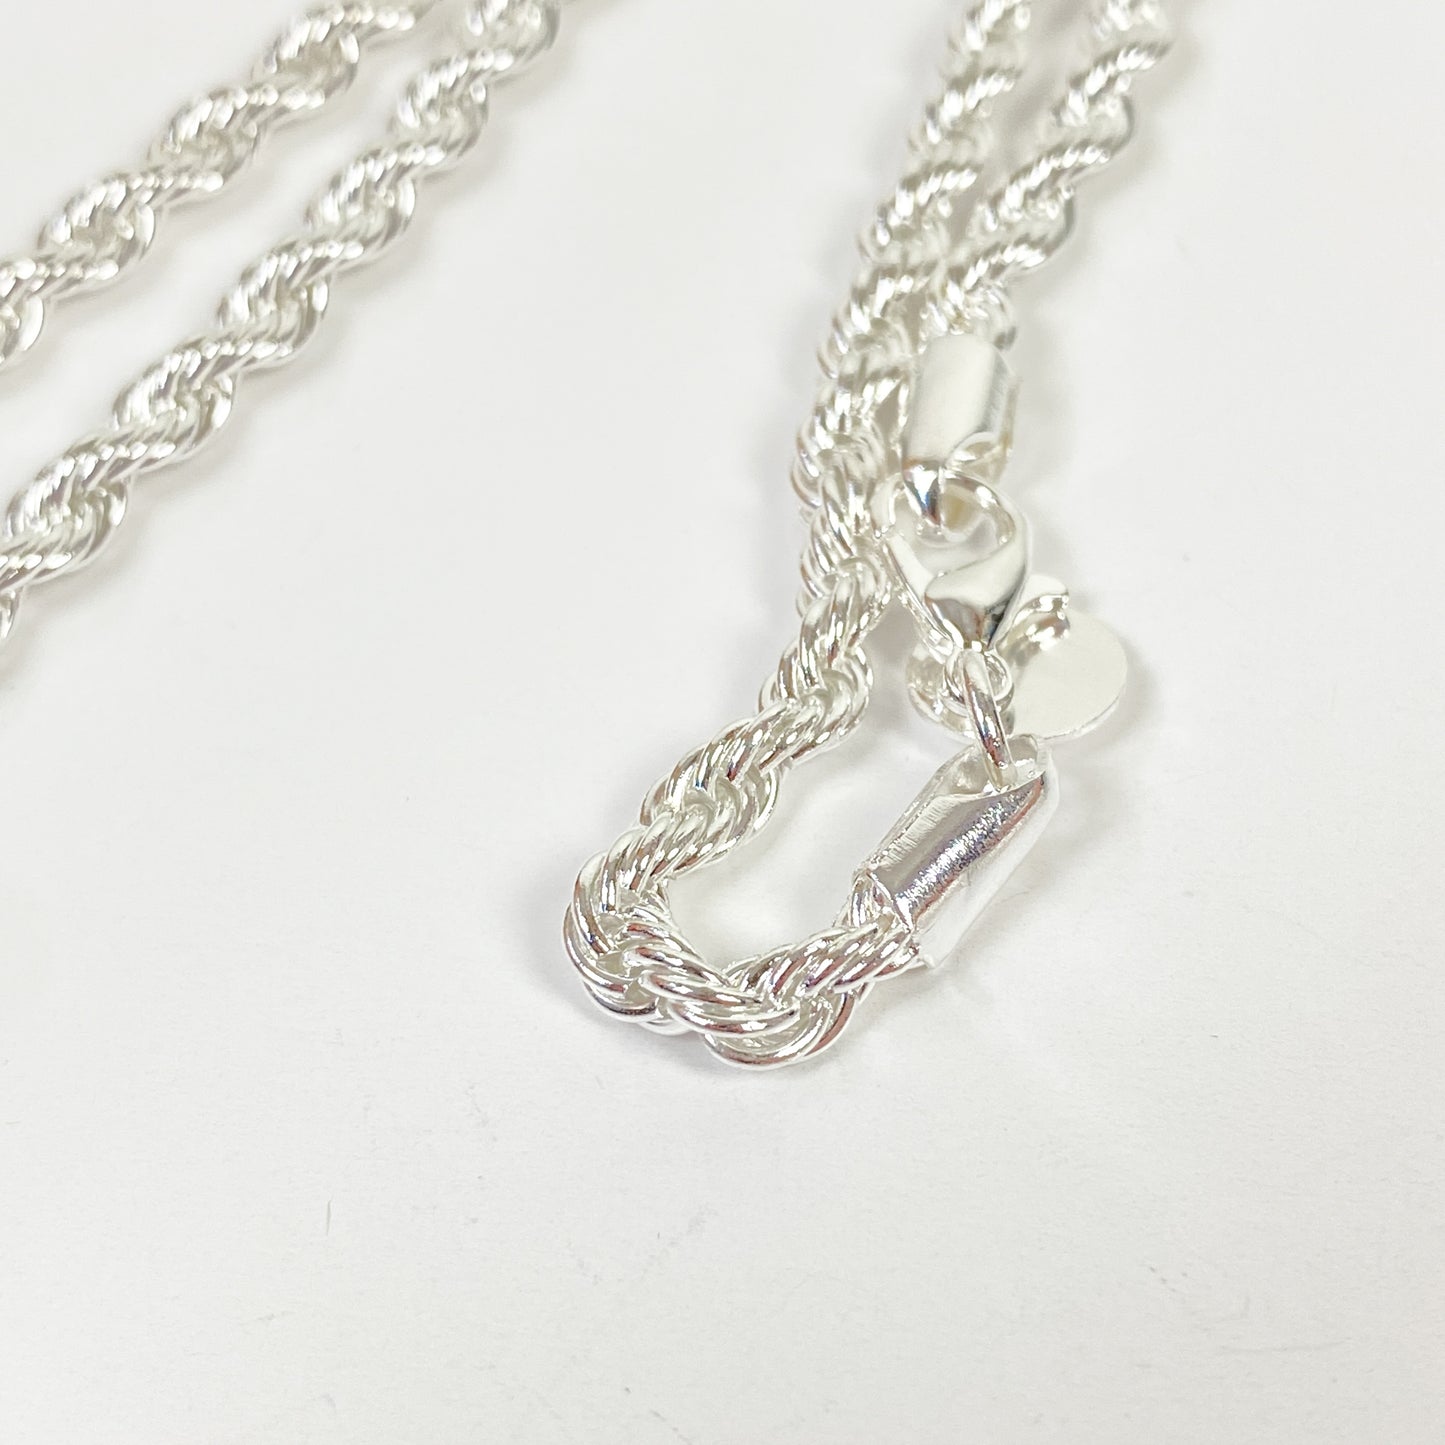 Retro Chain Link Necklace Chain Silver